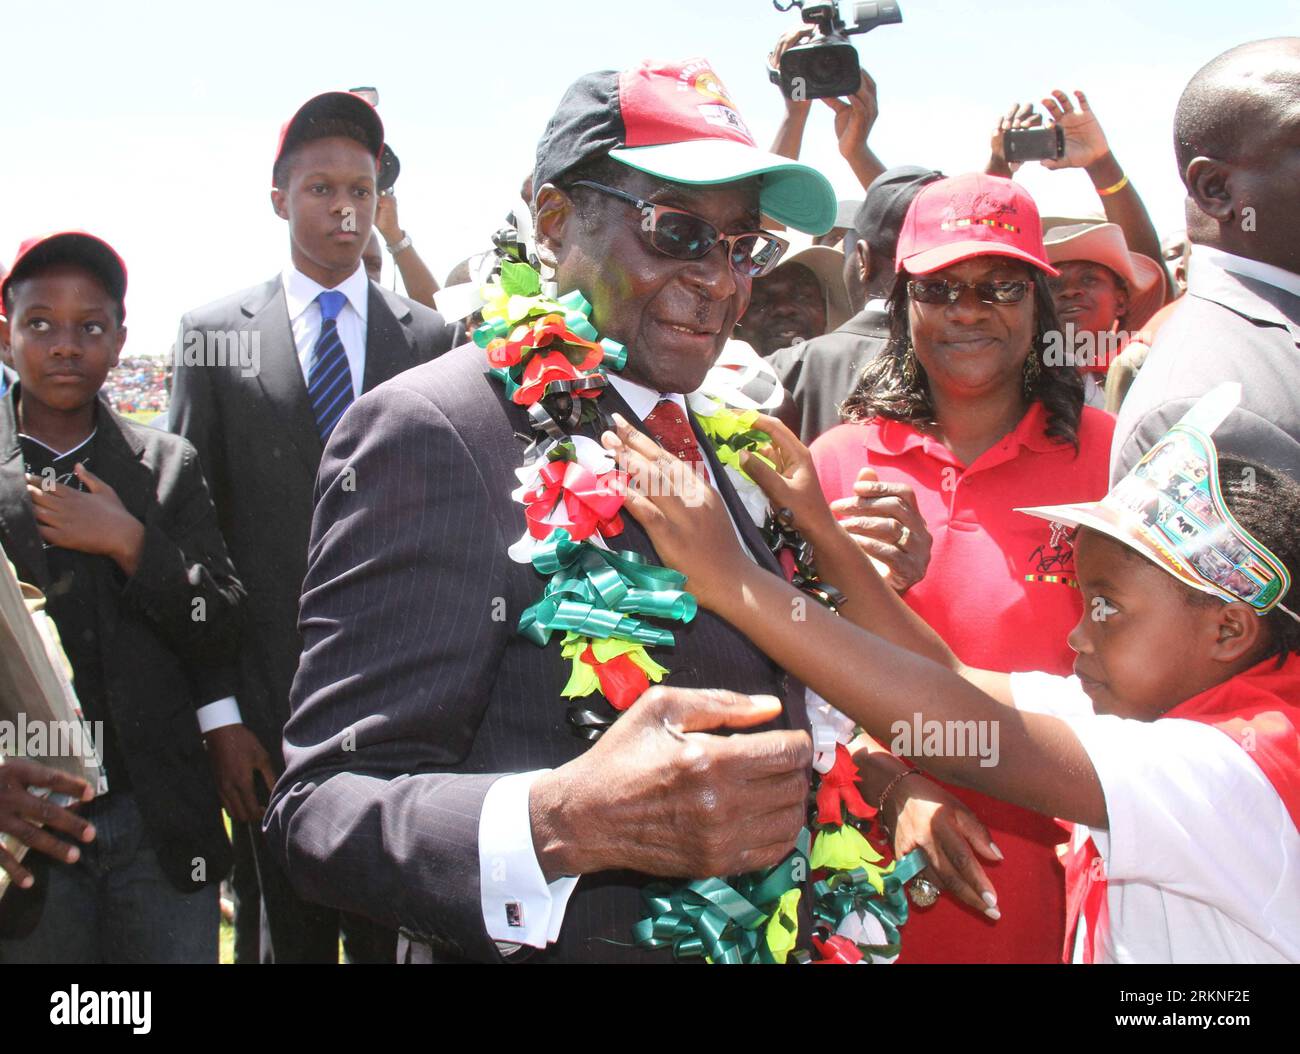 Bildnummer : 57108128 Datum : 25.02.2012 Copyright : imago/Xinhua (120225) -- HARARE, 25 février 2012 (Xinhua) -- le président zimbabwéen Robert Mugabe reçoit une couronne de fleurs lors d'un rassemblement pour célébrer son 88e anniversaire, dans la ville orientale de Mutare, le 25 février 2012. (Xinhua/Li Ping) (zx) ZIMBABWE-MUGABE-BIRTHDAY PUBLICATIONxNOTxINxCHN People Politik xdp x0x 2012 quer premiumd 57108128 Date 25 02 2012 Copyright Imago XINHUA Harare février 25 2012 le président zimbabwéen de XINHUA Robert Mugabe reçoit des fleurs lors d'un rassemblement pour célébrer son 88e anniversaire dans la ville orientale de Mutare février 25 2012 XINHUA quitte Pi Banque D'Images